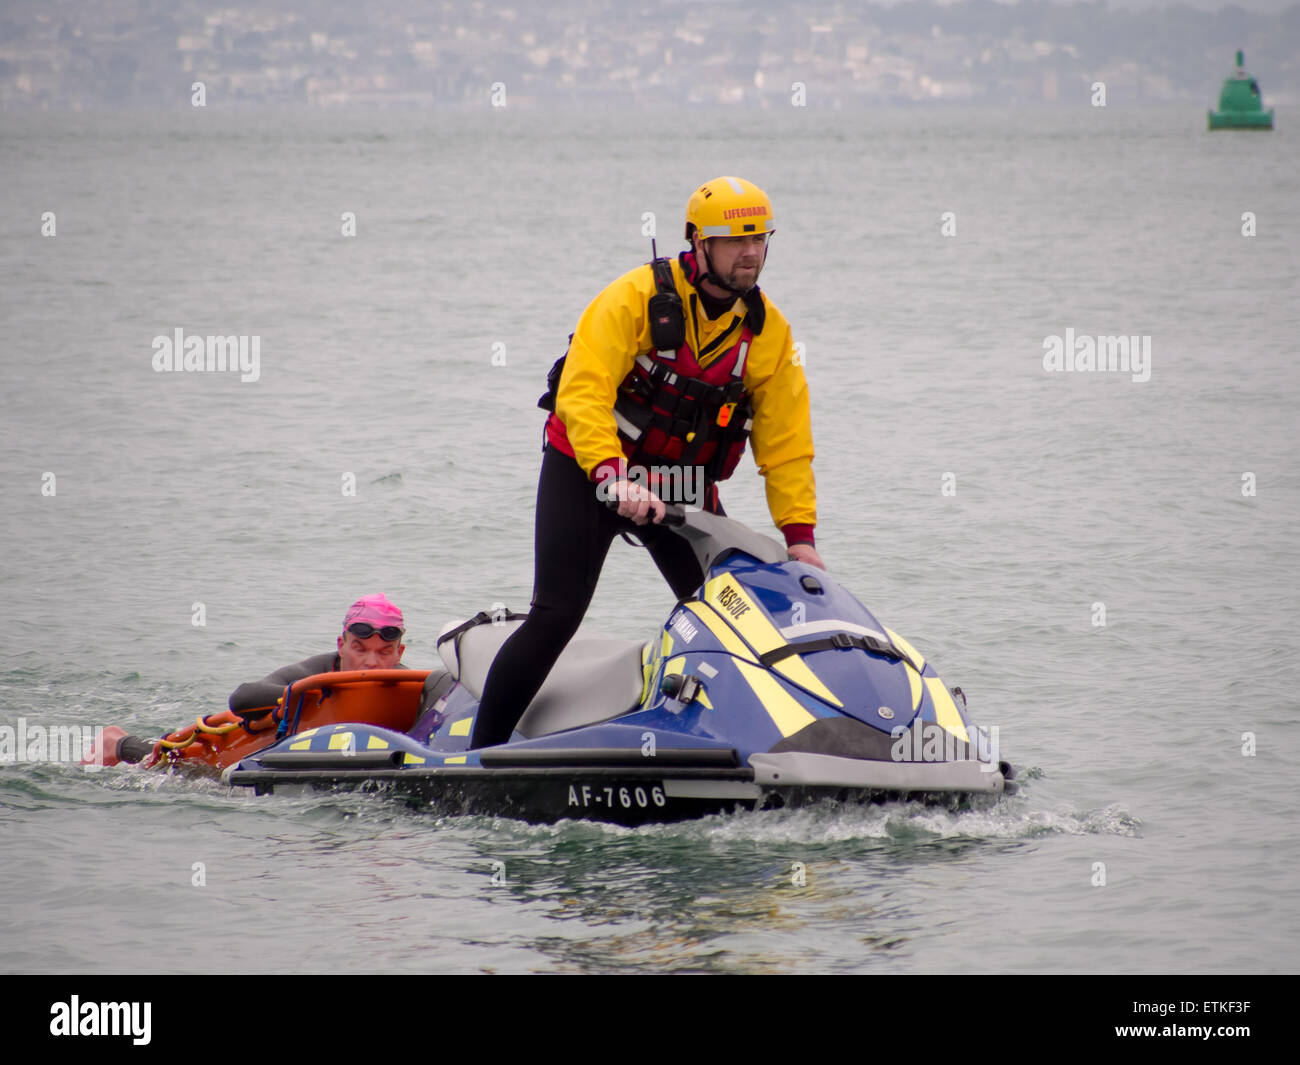 Un socorrista de una moto de agua ayuda a un nadador que está en dificultad, durante un evento en el Solent triatlón Foto de stock